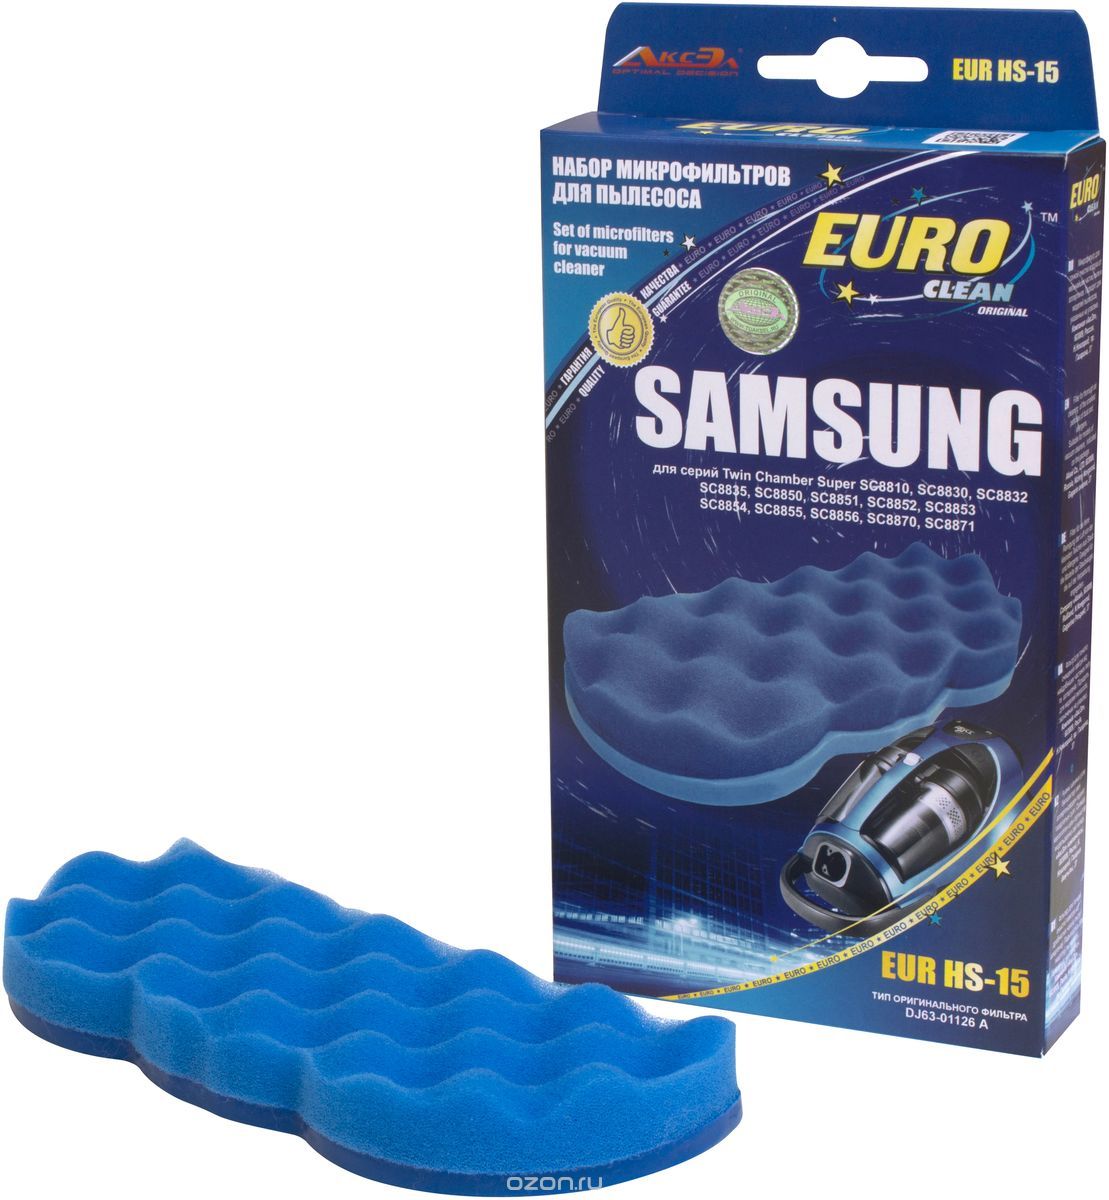 Euro Clean EUR HS-15    Samsung ( DJ63-01126A)